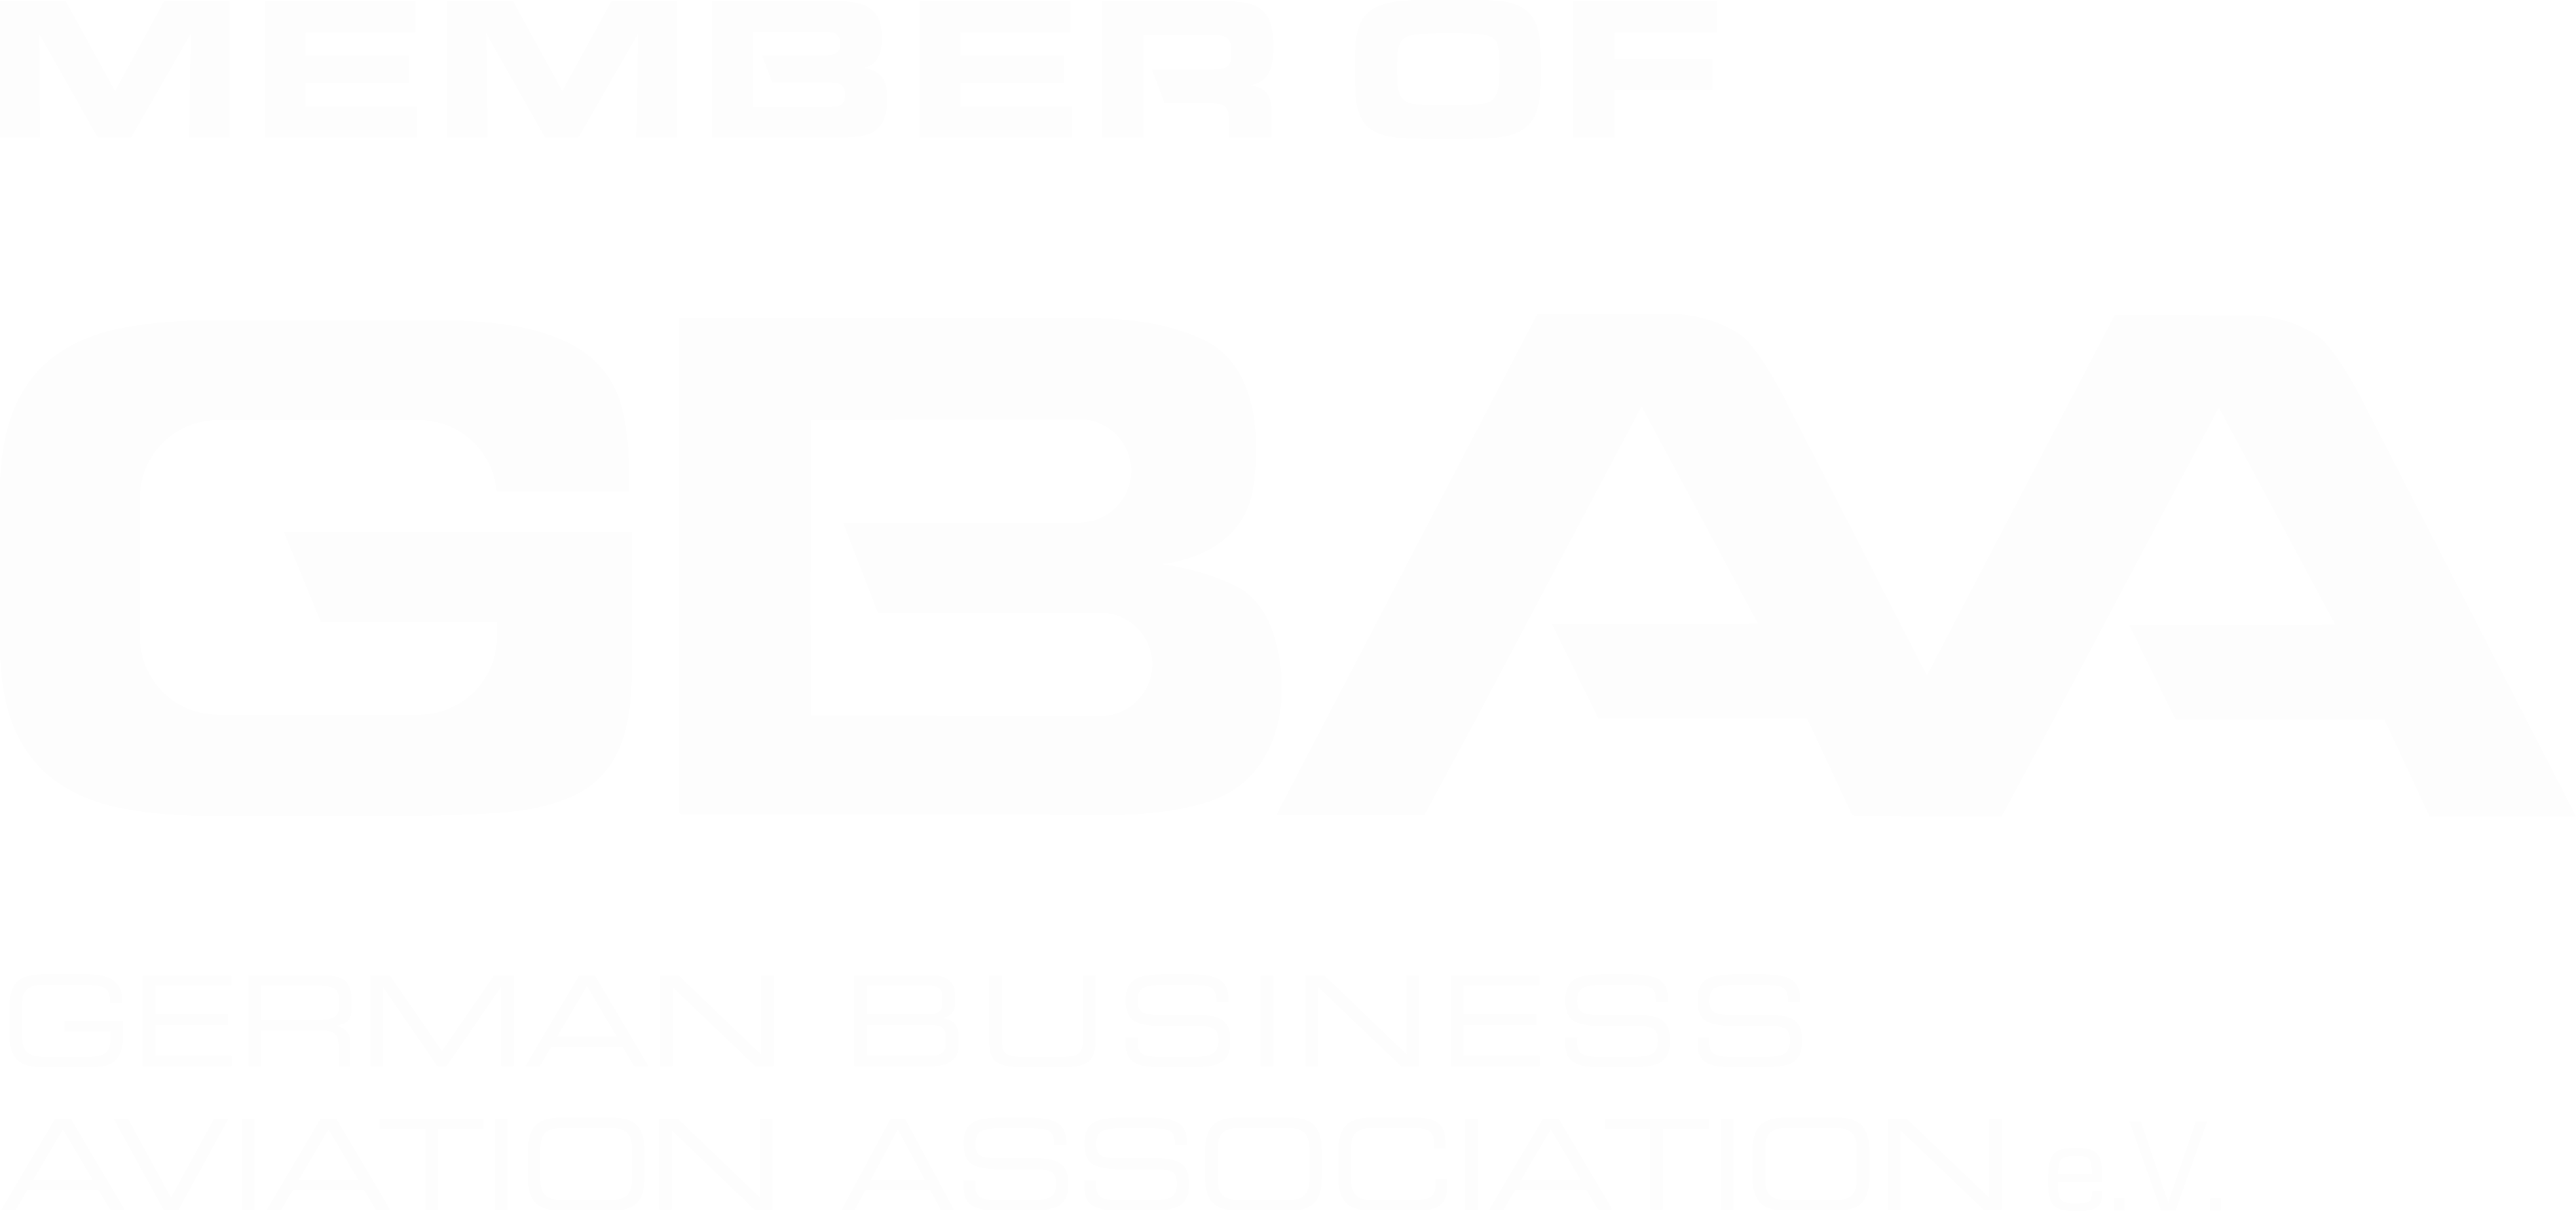 GBAA Logo Member of_freigestellt weiss